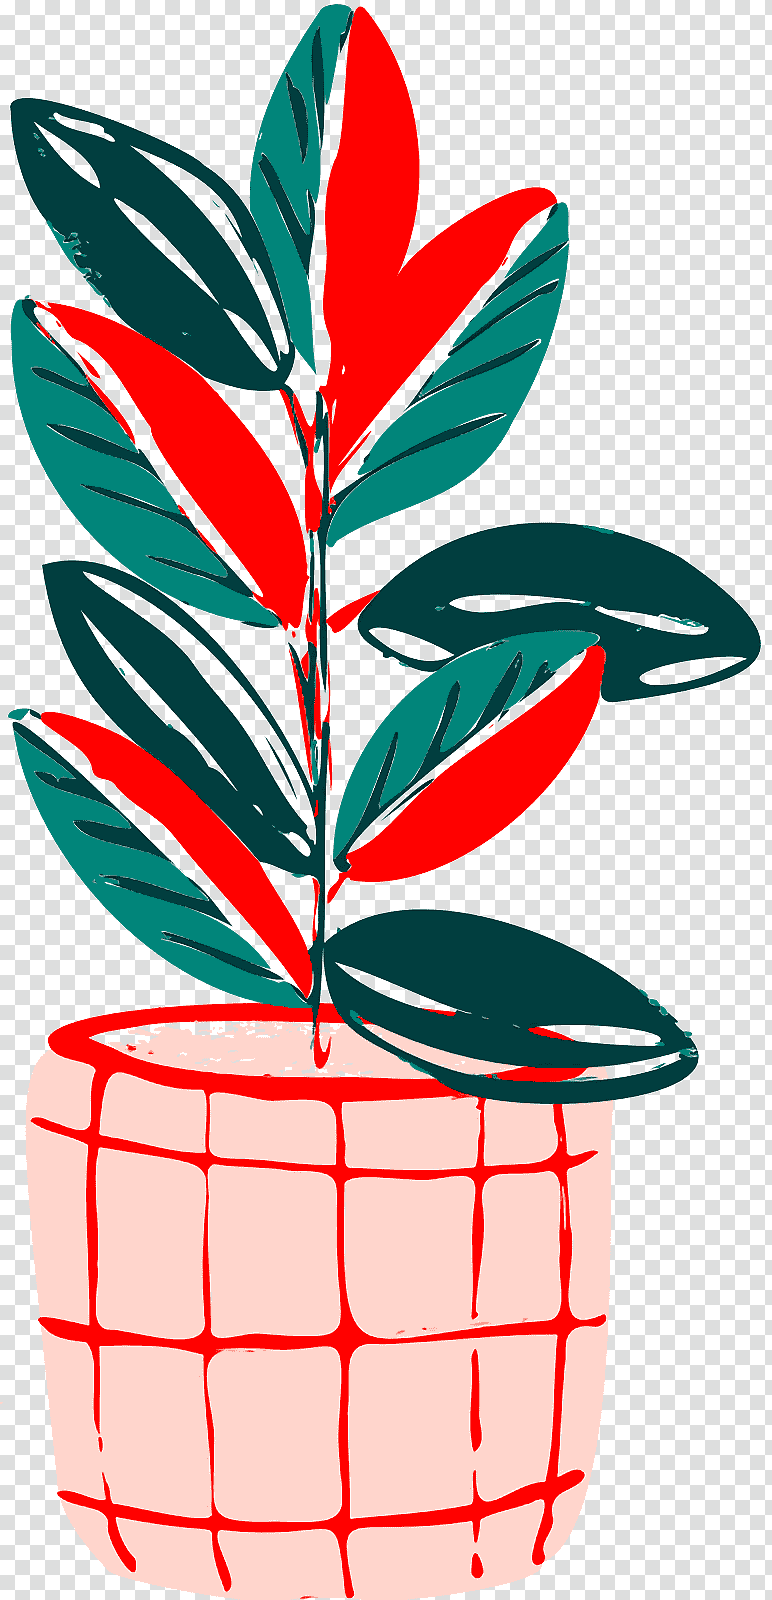 plant stem leaf flowerpot flower tree, Line, Meter, Plants, Mathematics, Plant Structure transparent background PNG clipart